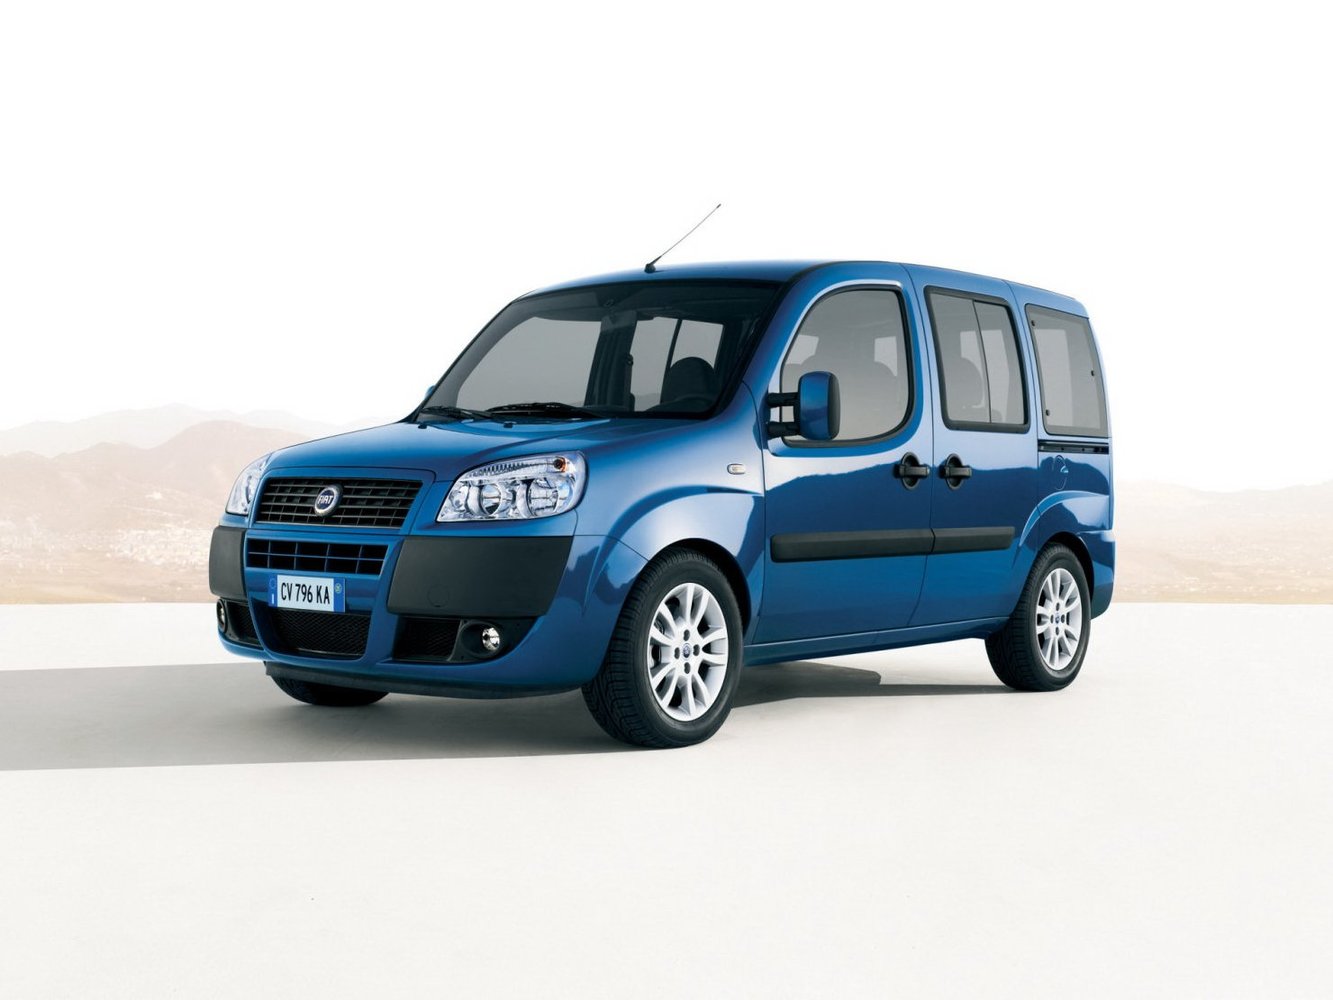 минивэн Fiat Doblo 2005 - 2015г выпуска модификация 1.2 MT (85 л.с.)